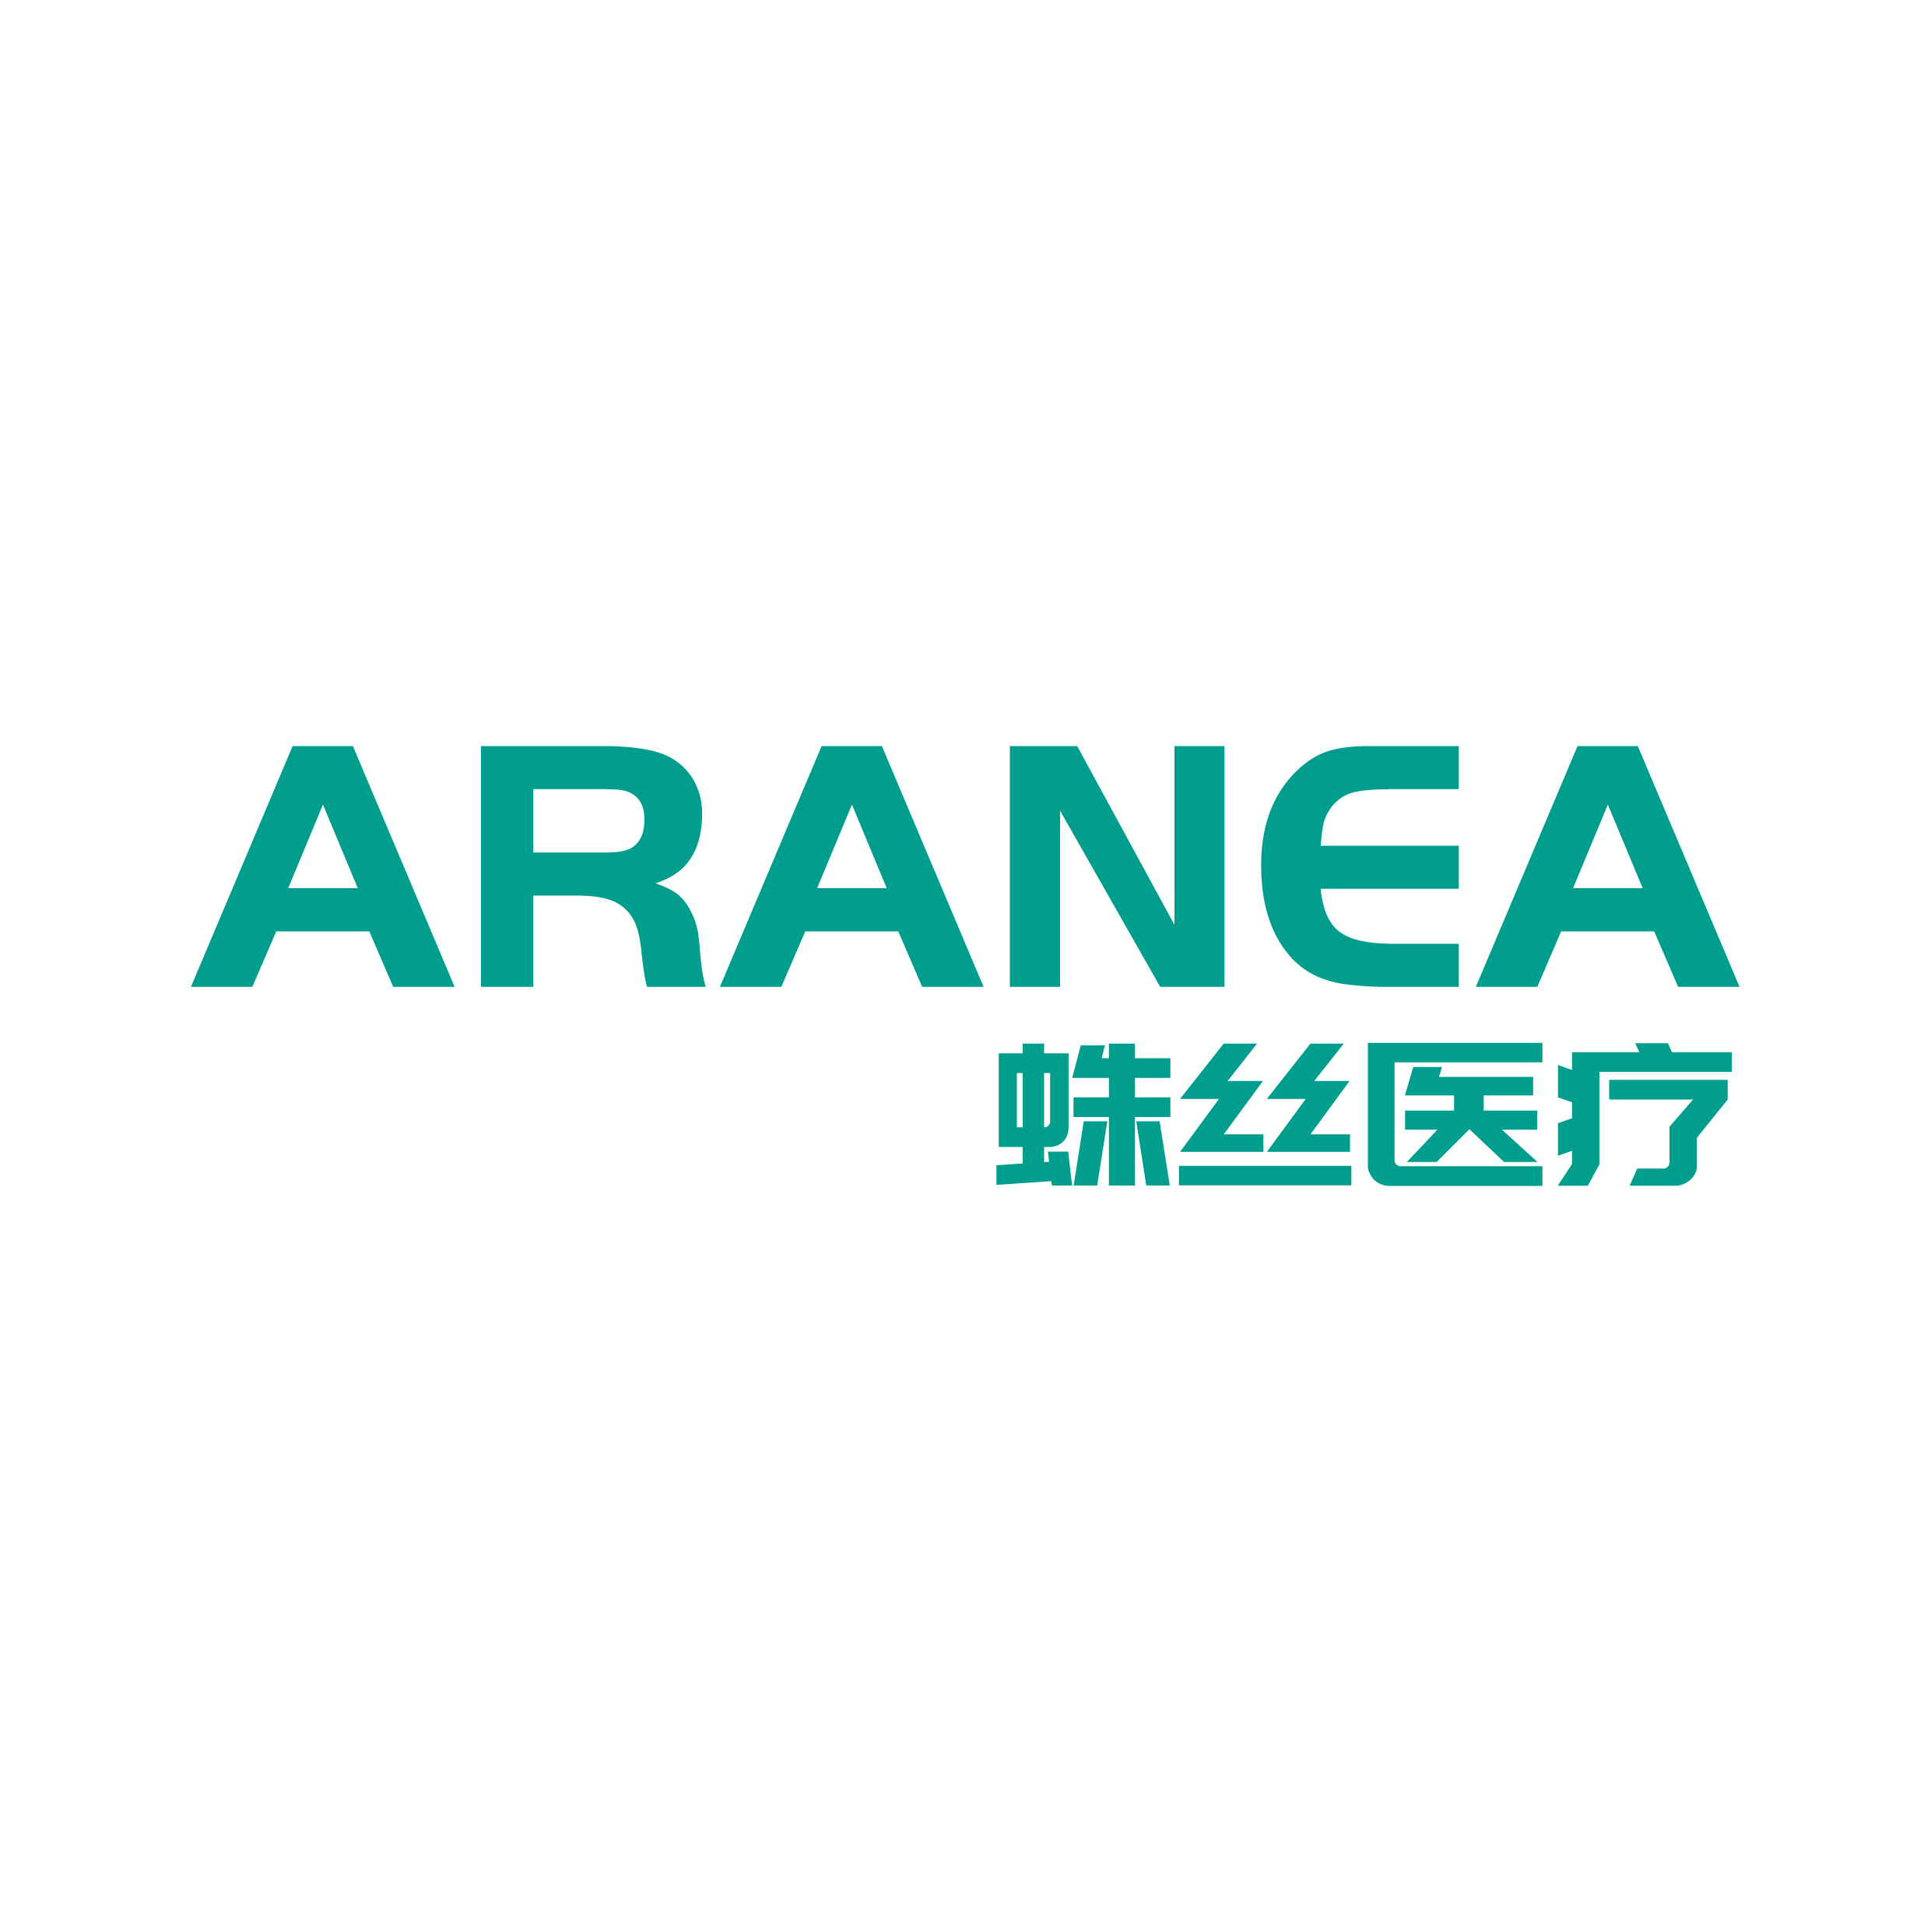 ARANEA Spider Silk Medical & KOUHIGH Brand Authorization